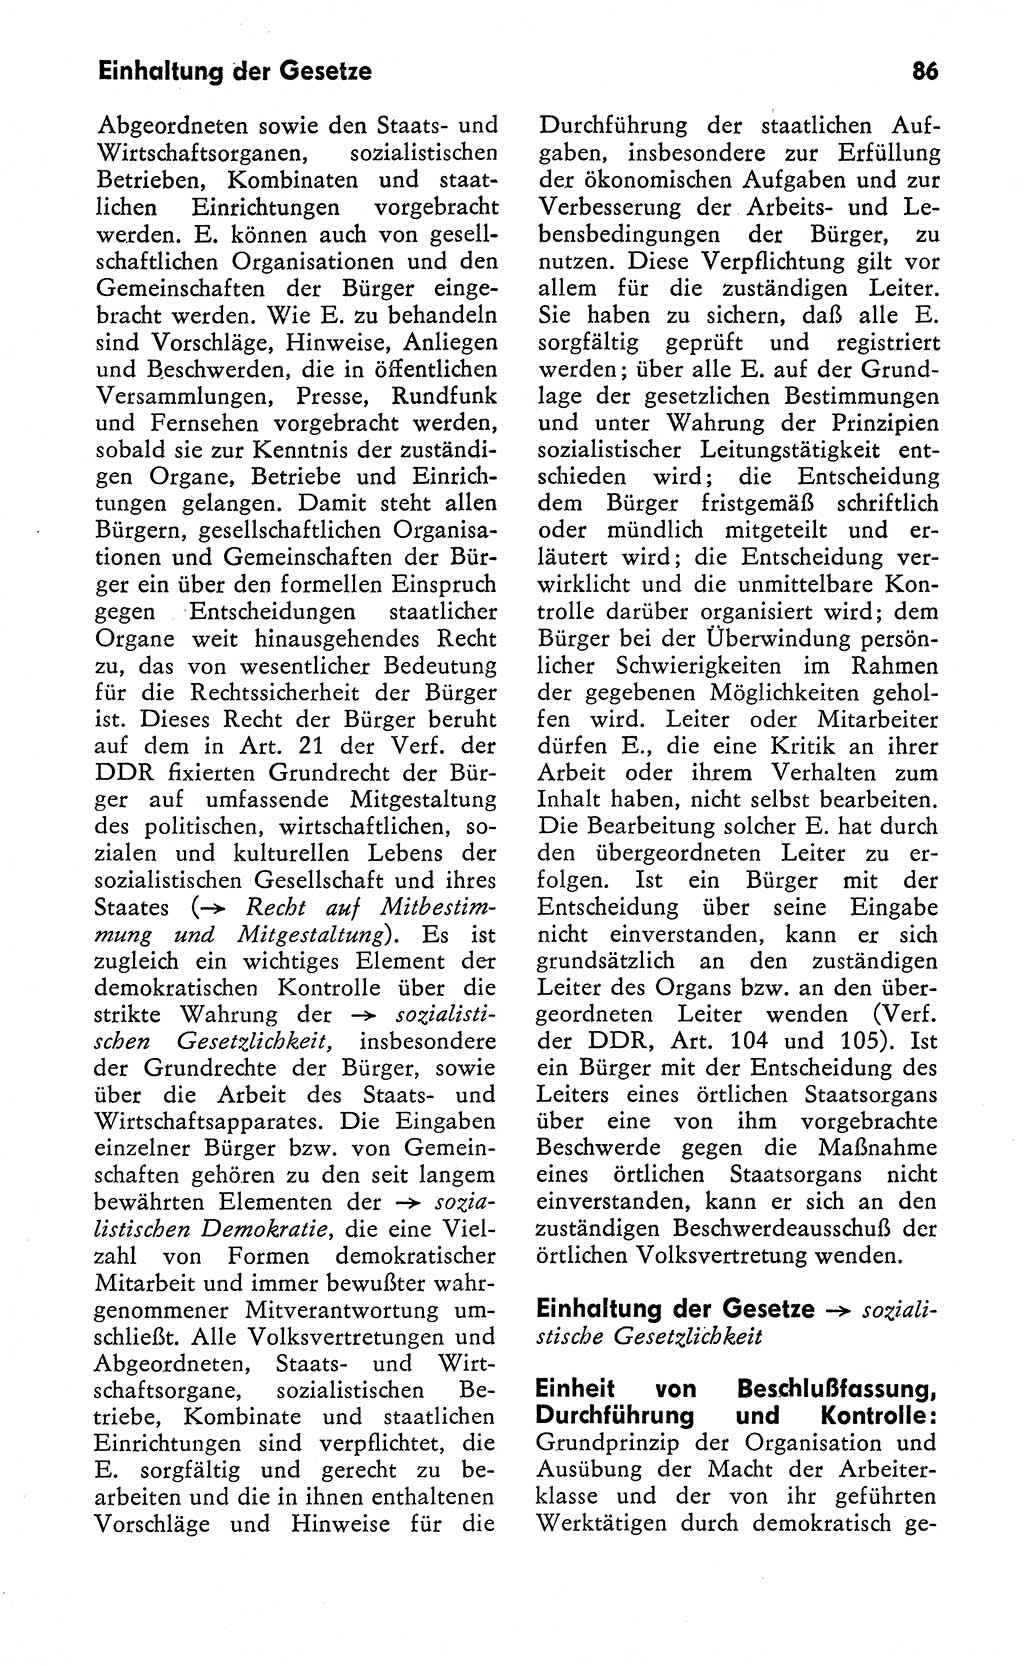 Wörterbuch zum sozialistischen Staat [Deutsche Demokratische Republik (DDR)] 1974, Seite 86 (Wb. soz. St. DDR 1974, S. 86)